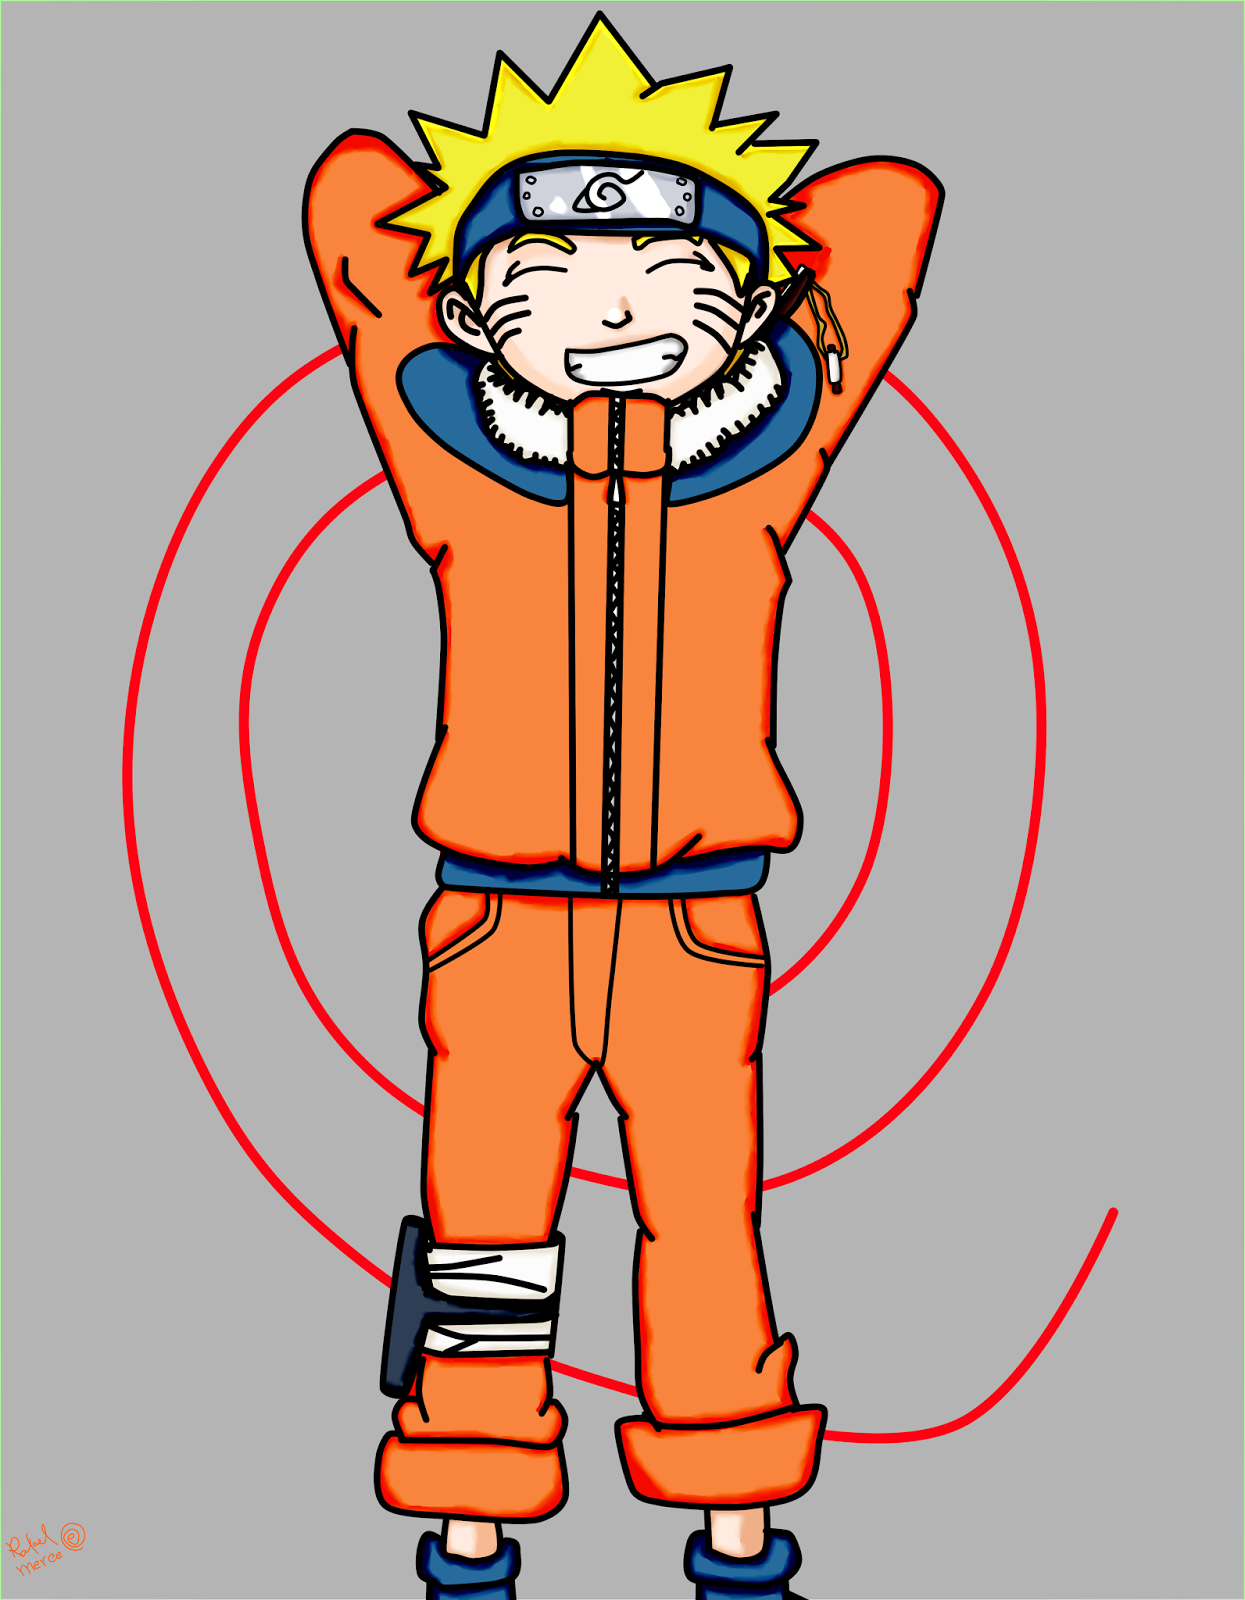 Desenhos Online Art - Naruto clássico ficou marcado na minha infância! ❤️ .  . Gostou do desenho? Curta ➡️ @desenhos.online.art . . Créditos:  @michele_pisu . . #narutoclassico #narutoshippuden #animesbrasil #desenhos  #desenhosrealistas #desenhododia